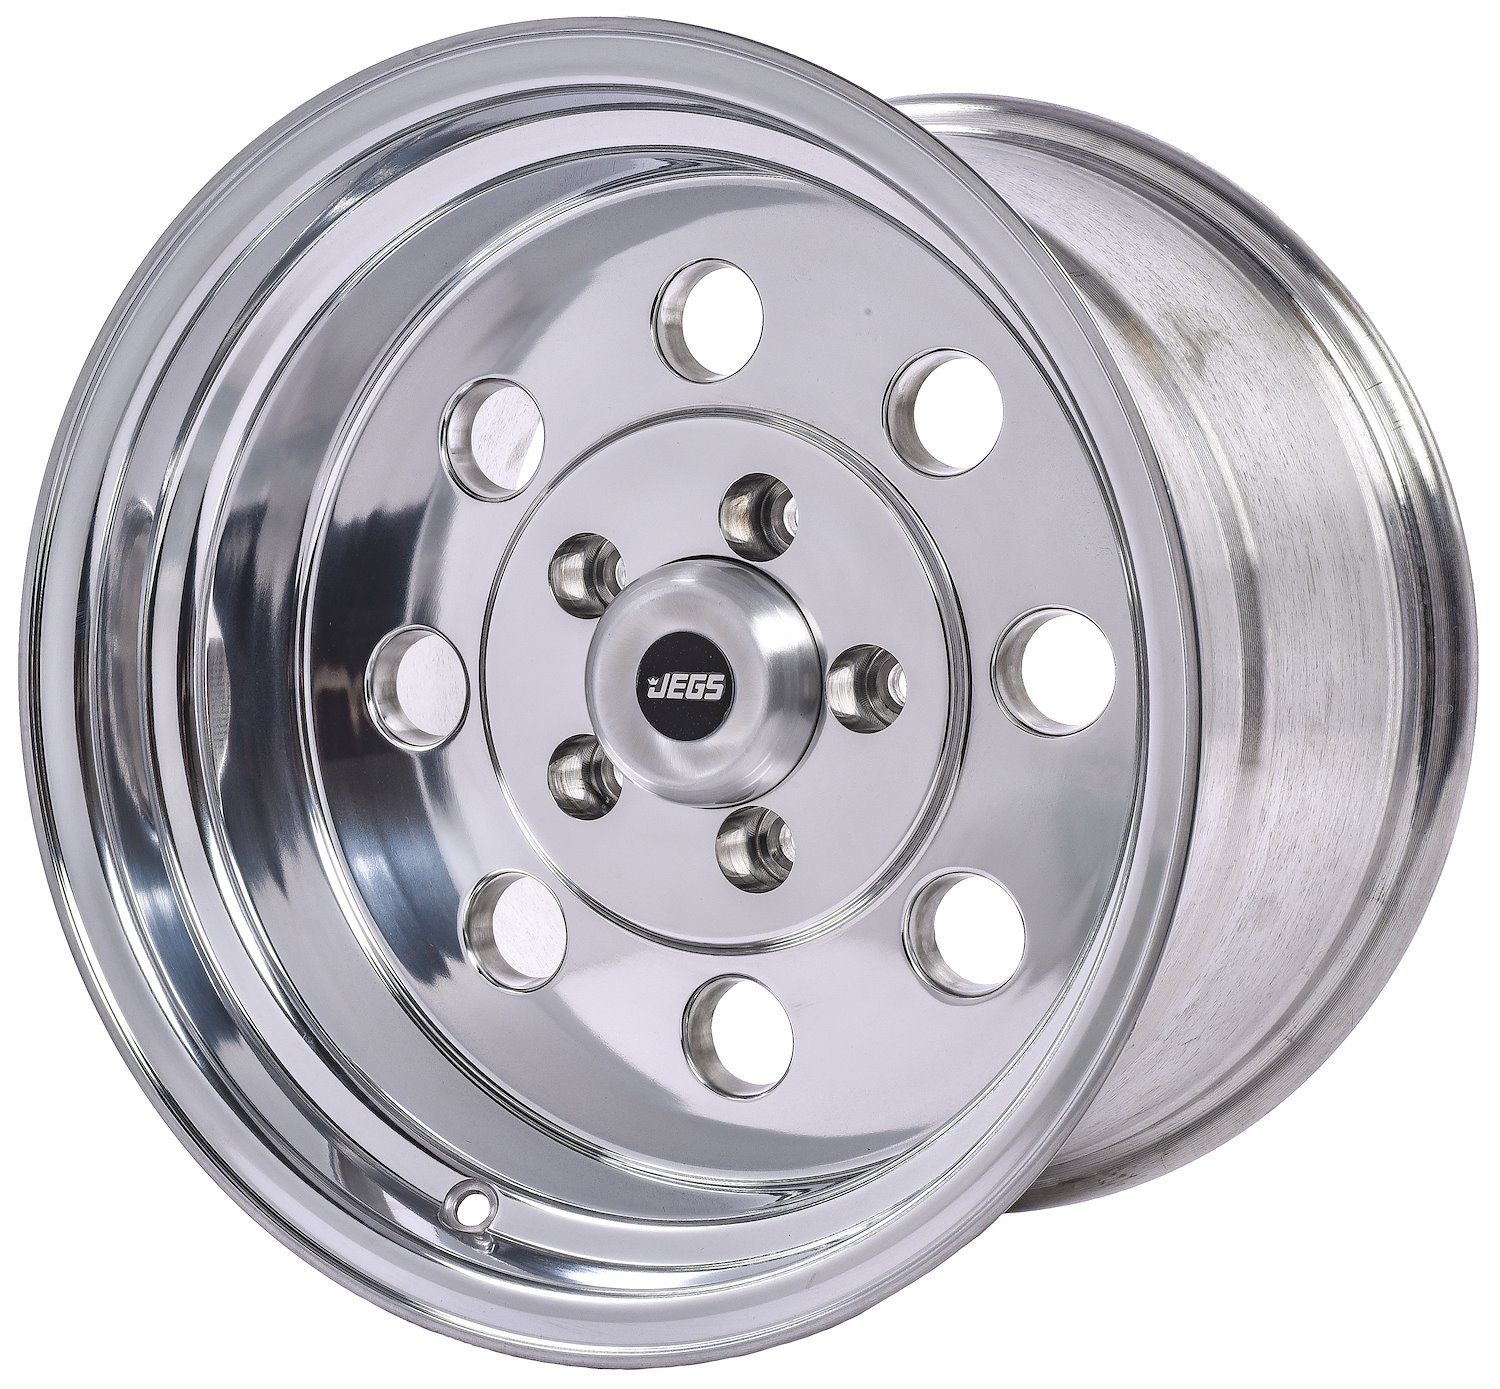 Sport Lite 8-Hole Wheel [Size: 15" x 10"] Polished